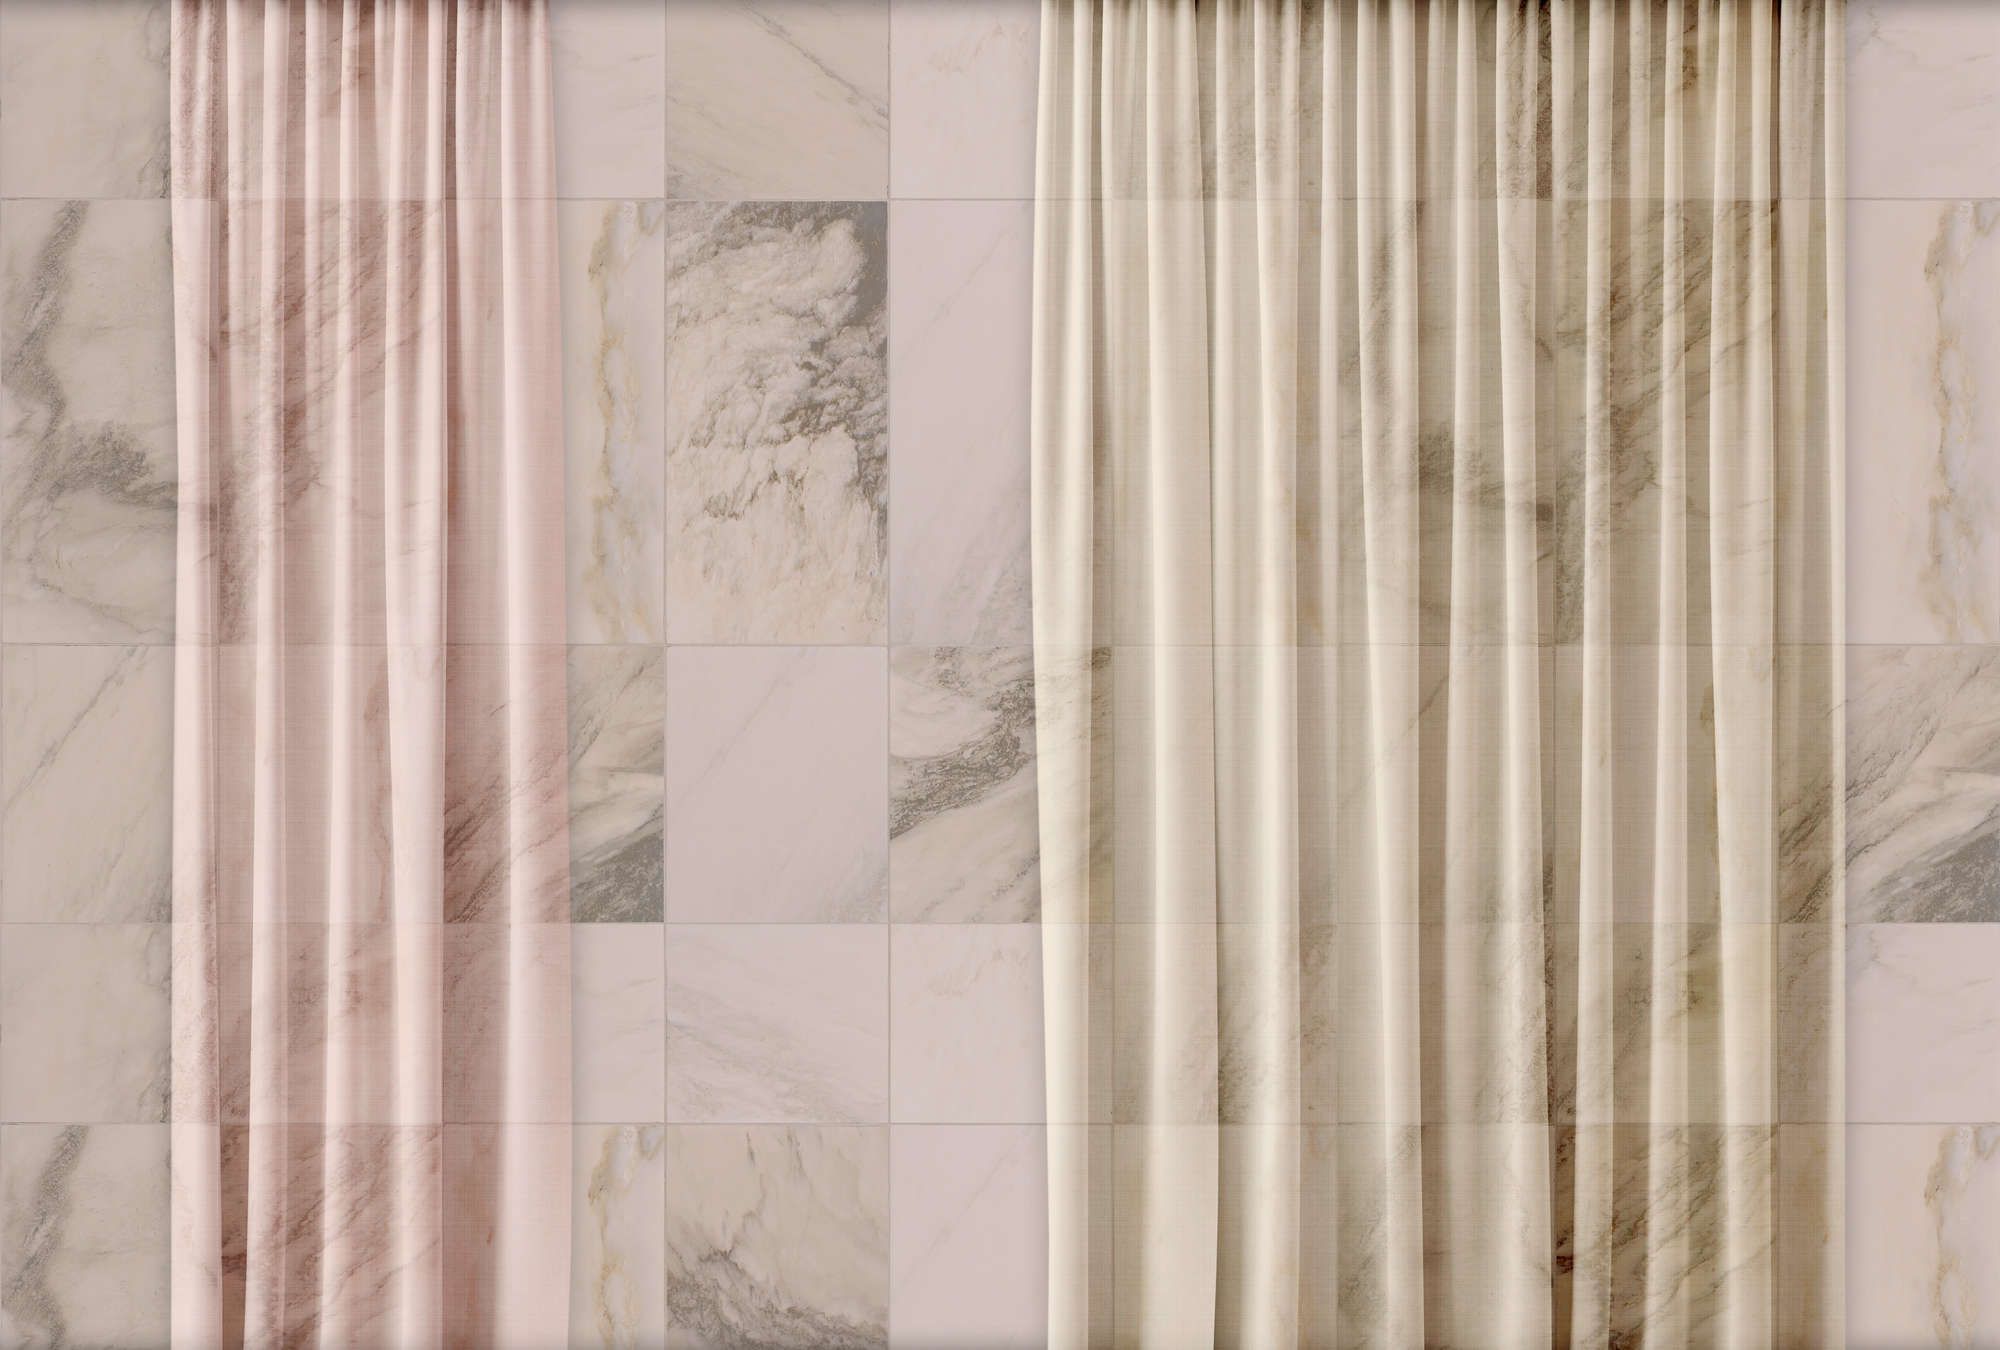             Digital behang »nova 3« - Subtiel vallende gordijnen tegen een beige marmeren muur - Licht gestructureerde vliesstof
        